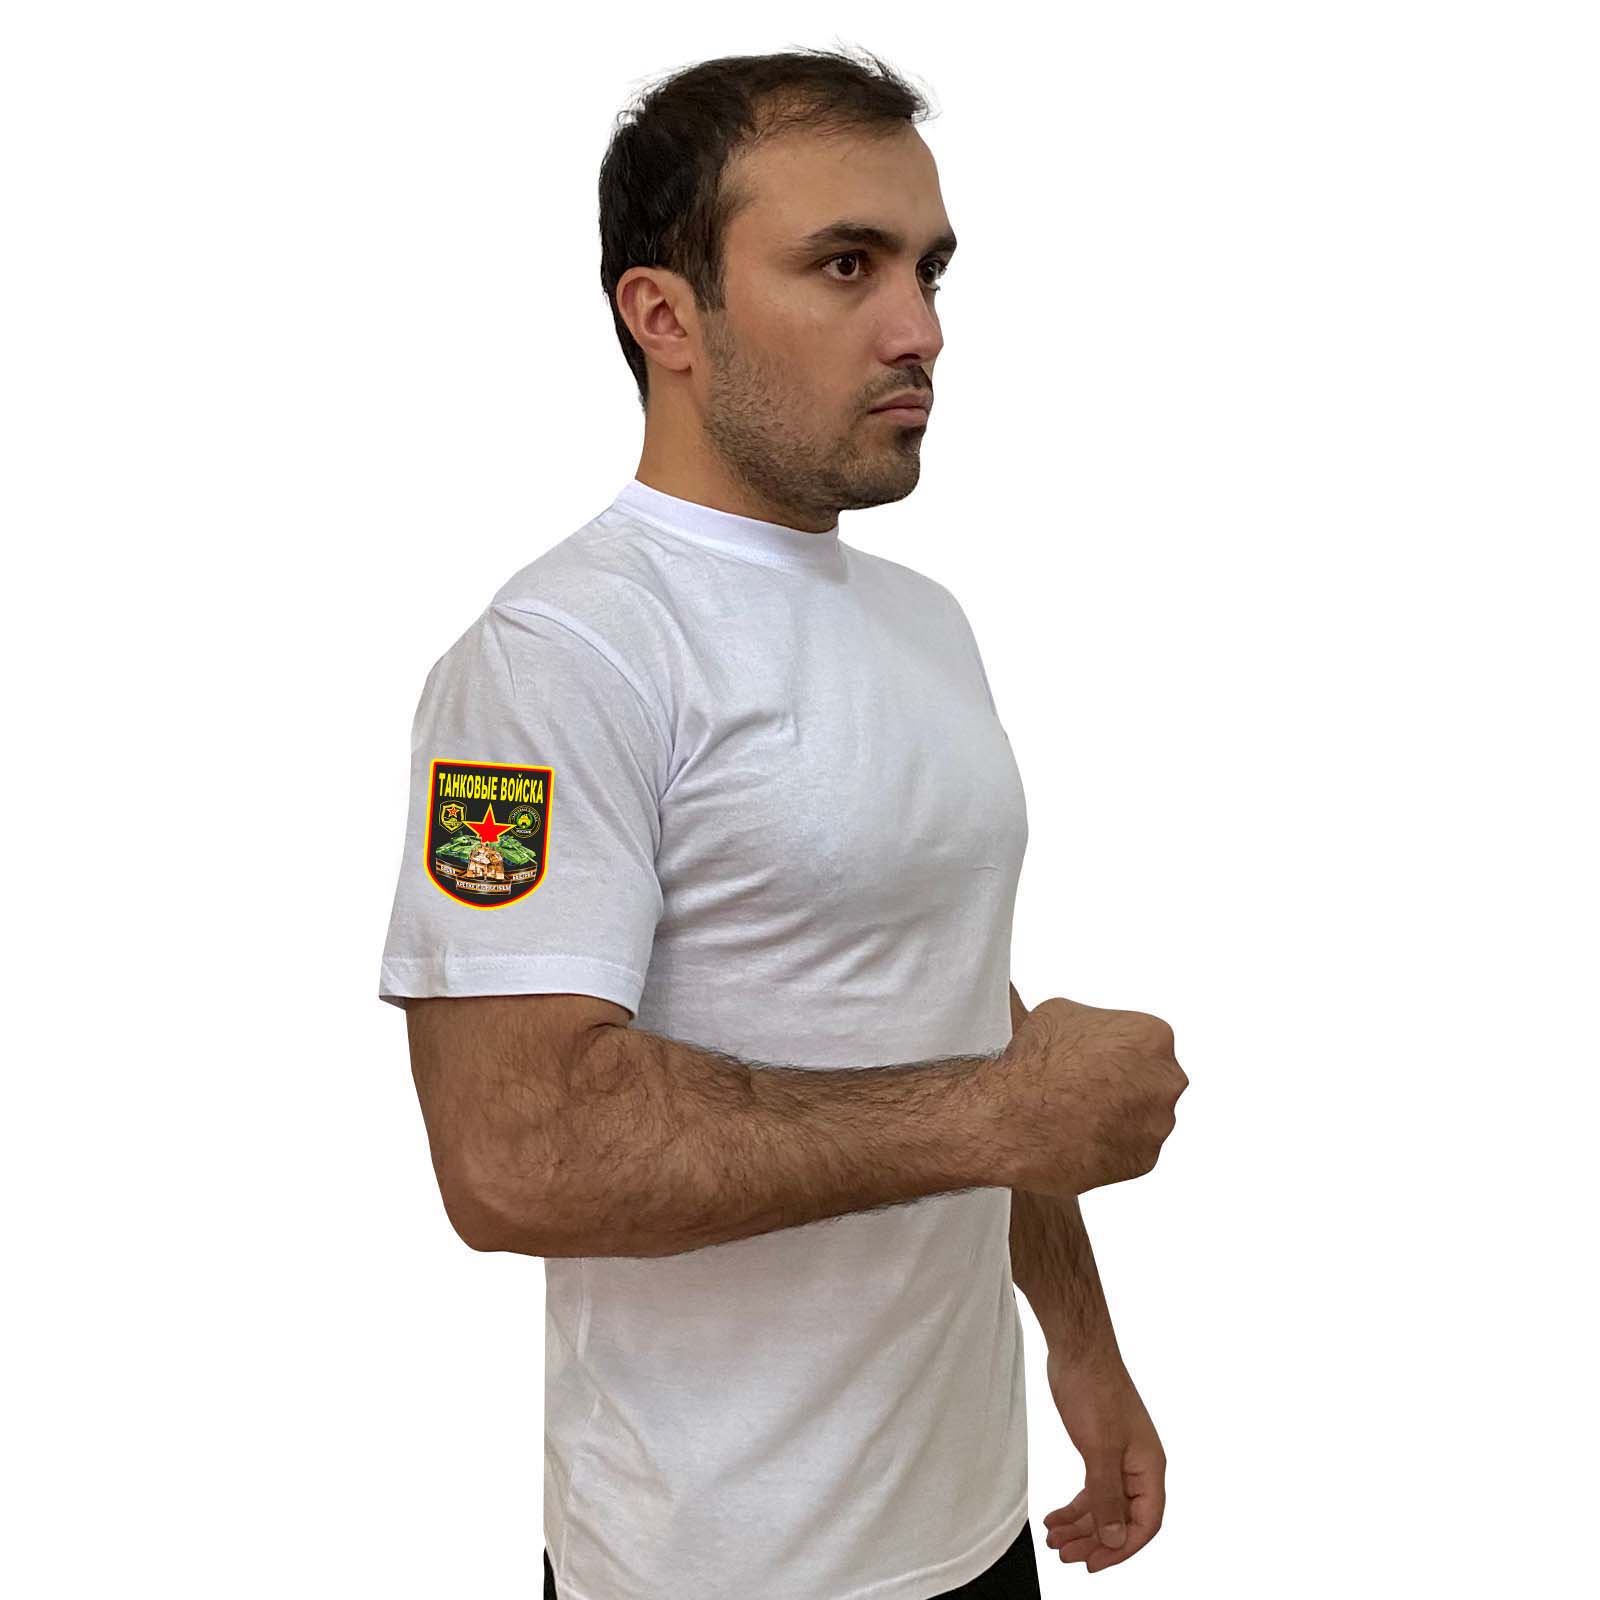 Купить белую топовую футболку с термотрансфером Танковые Войска выгодно